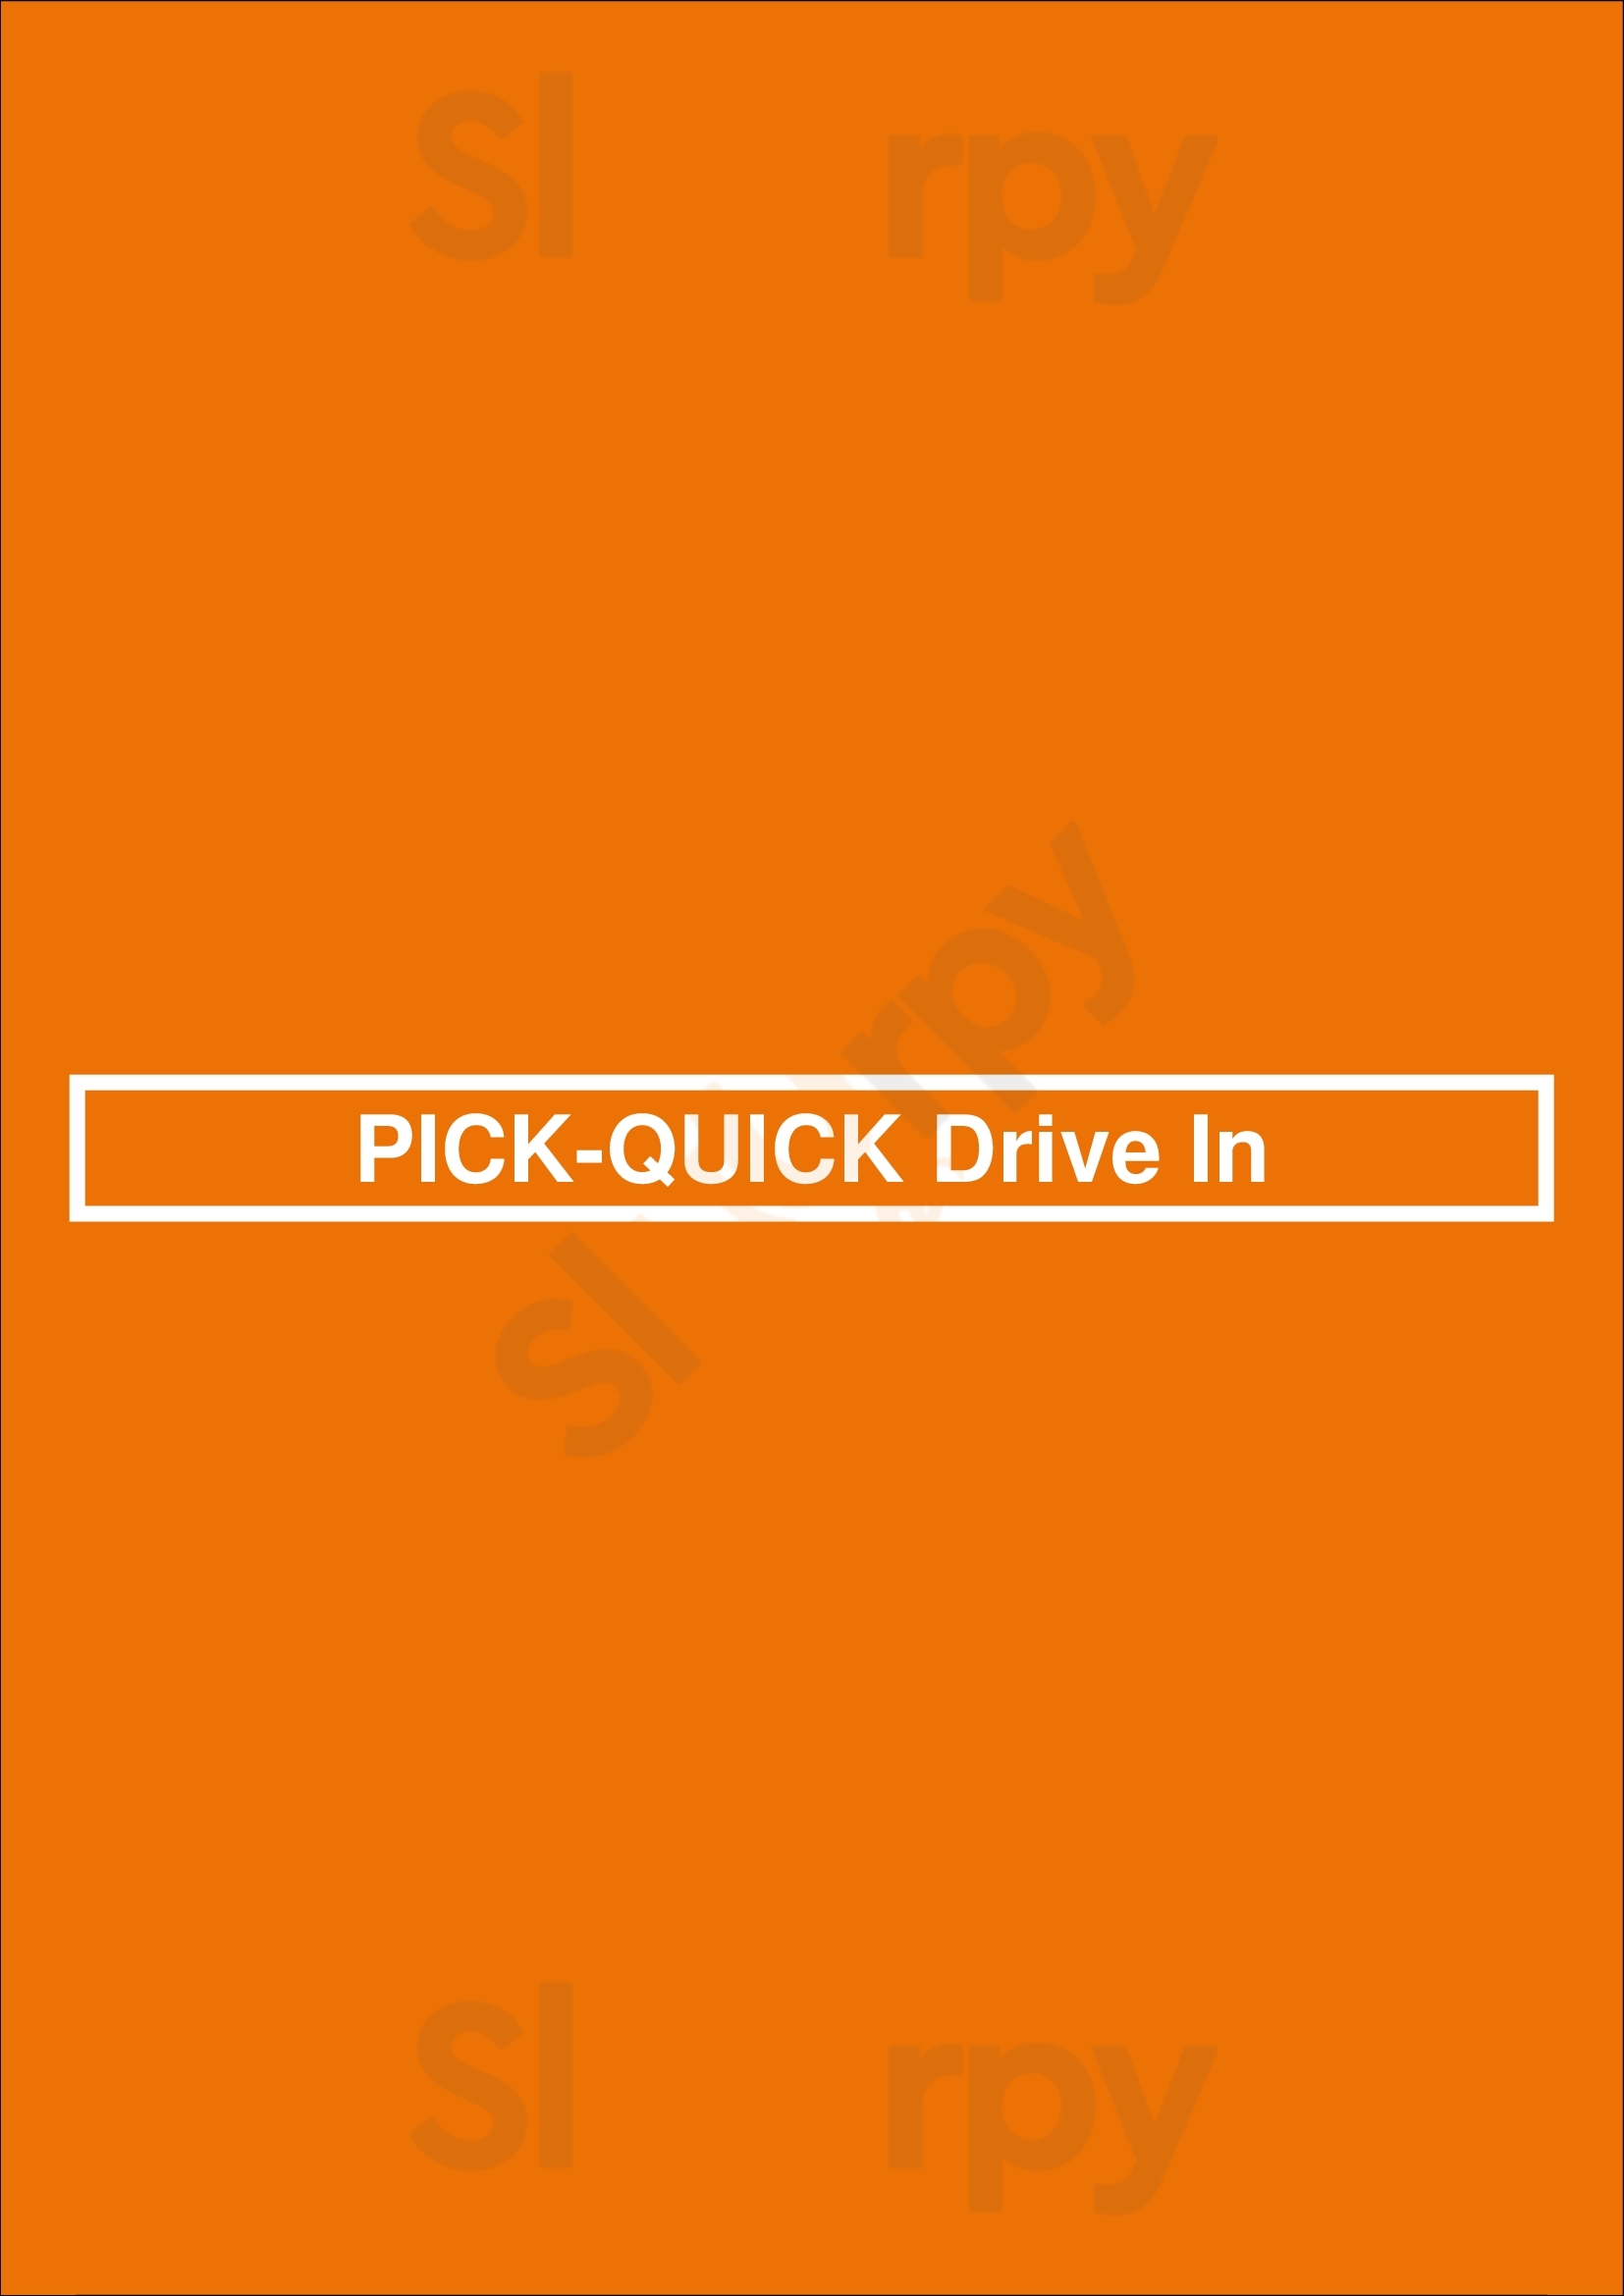 Pick-quick Drive In Seattle Menu - 1